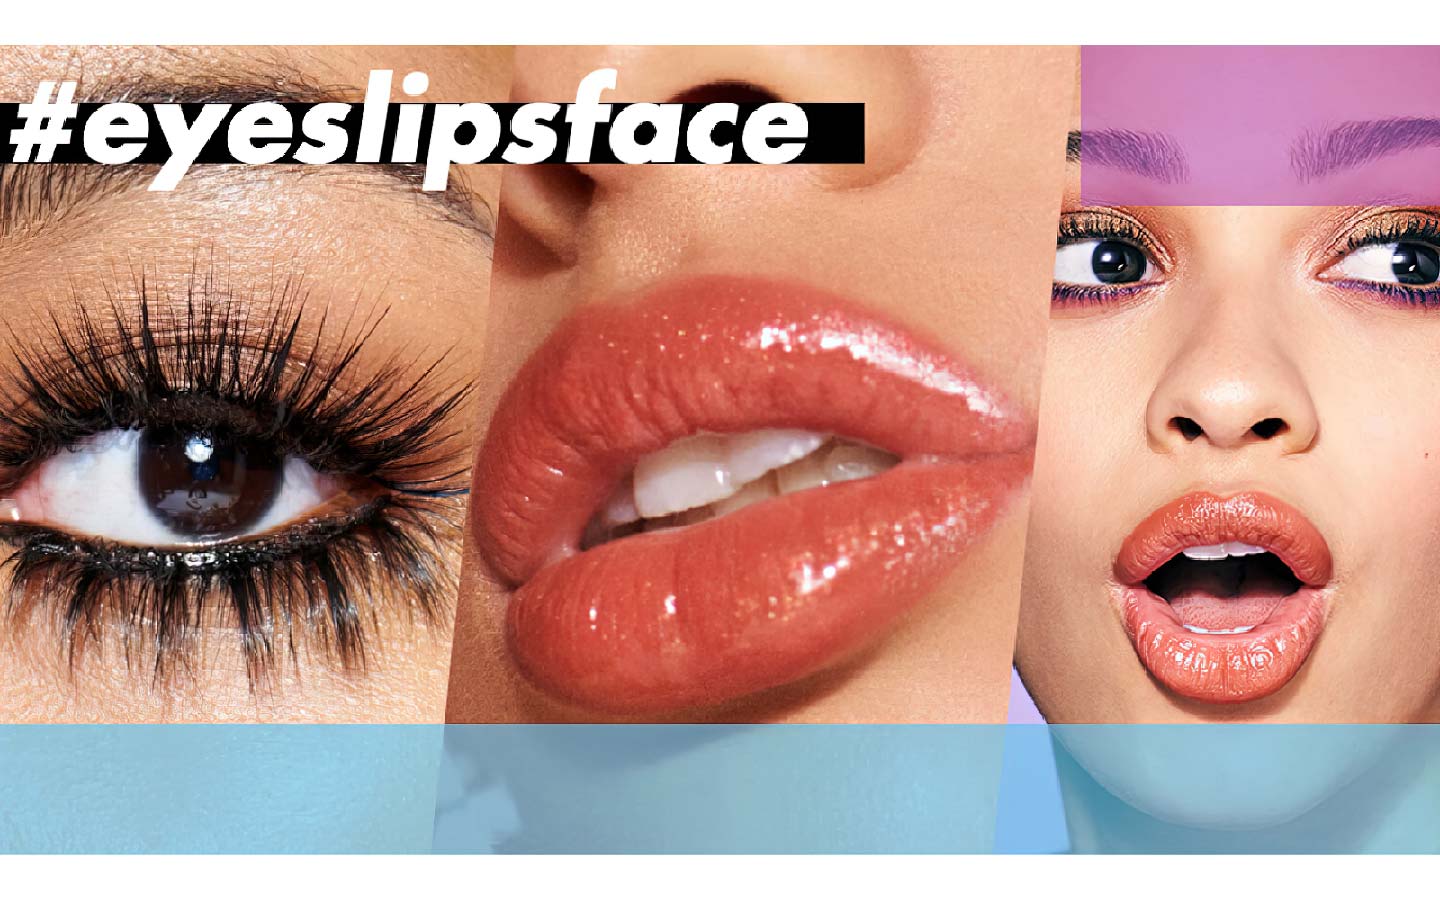 La challenge #eyeslipsface lanciata da e.l.f. per la promozione dei suoi prodotti